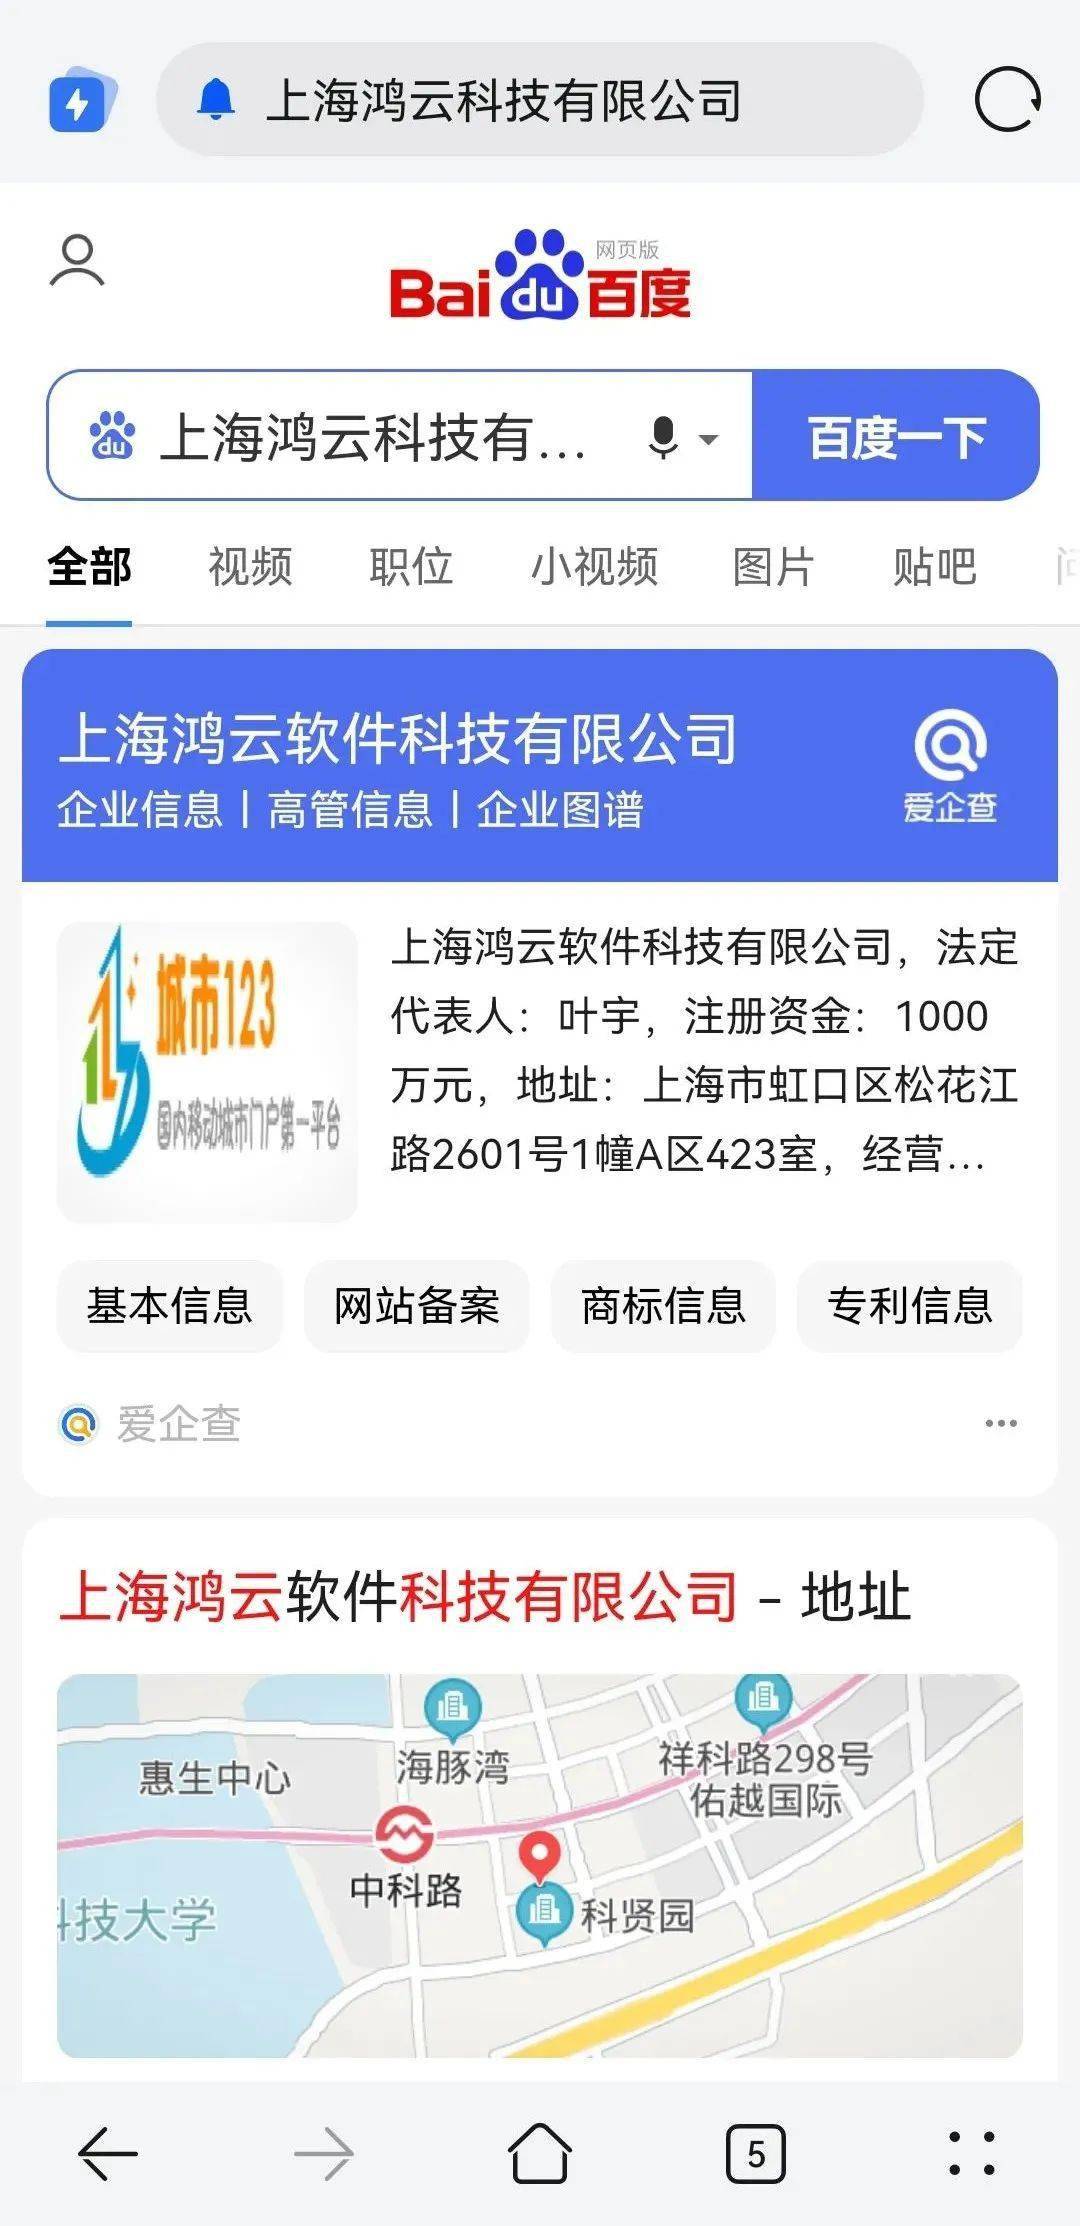 上海浦东法院发布互联网不正当竞争典型案例 附判决